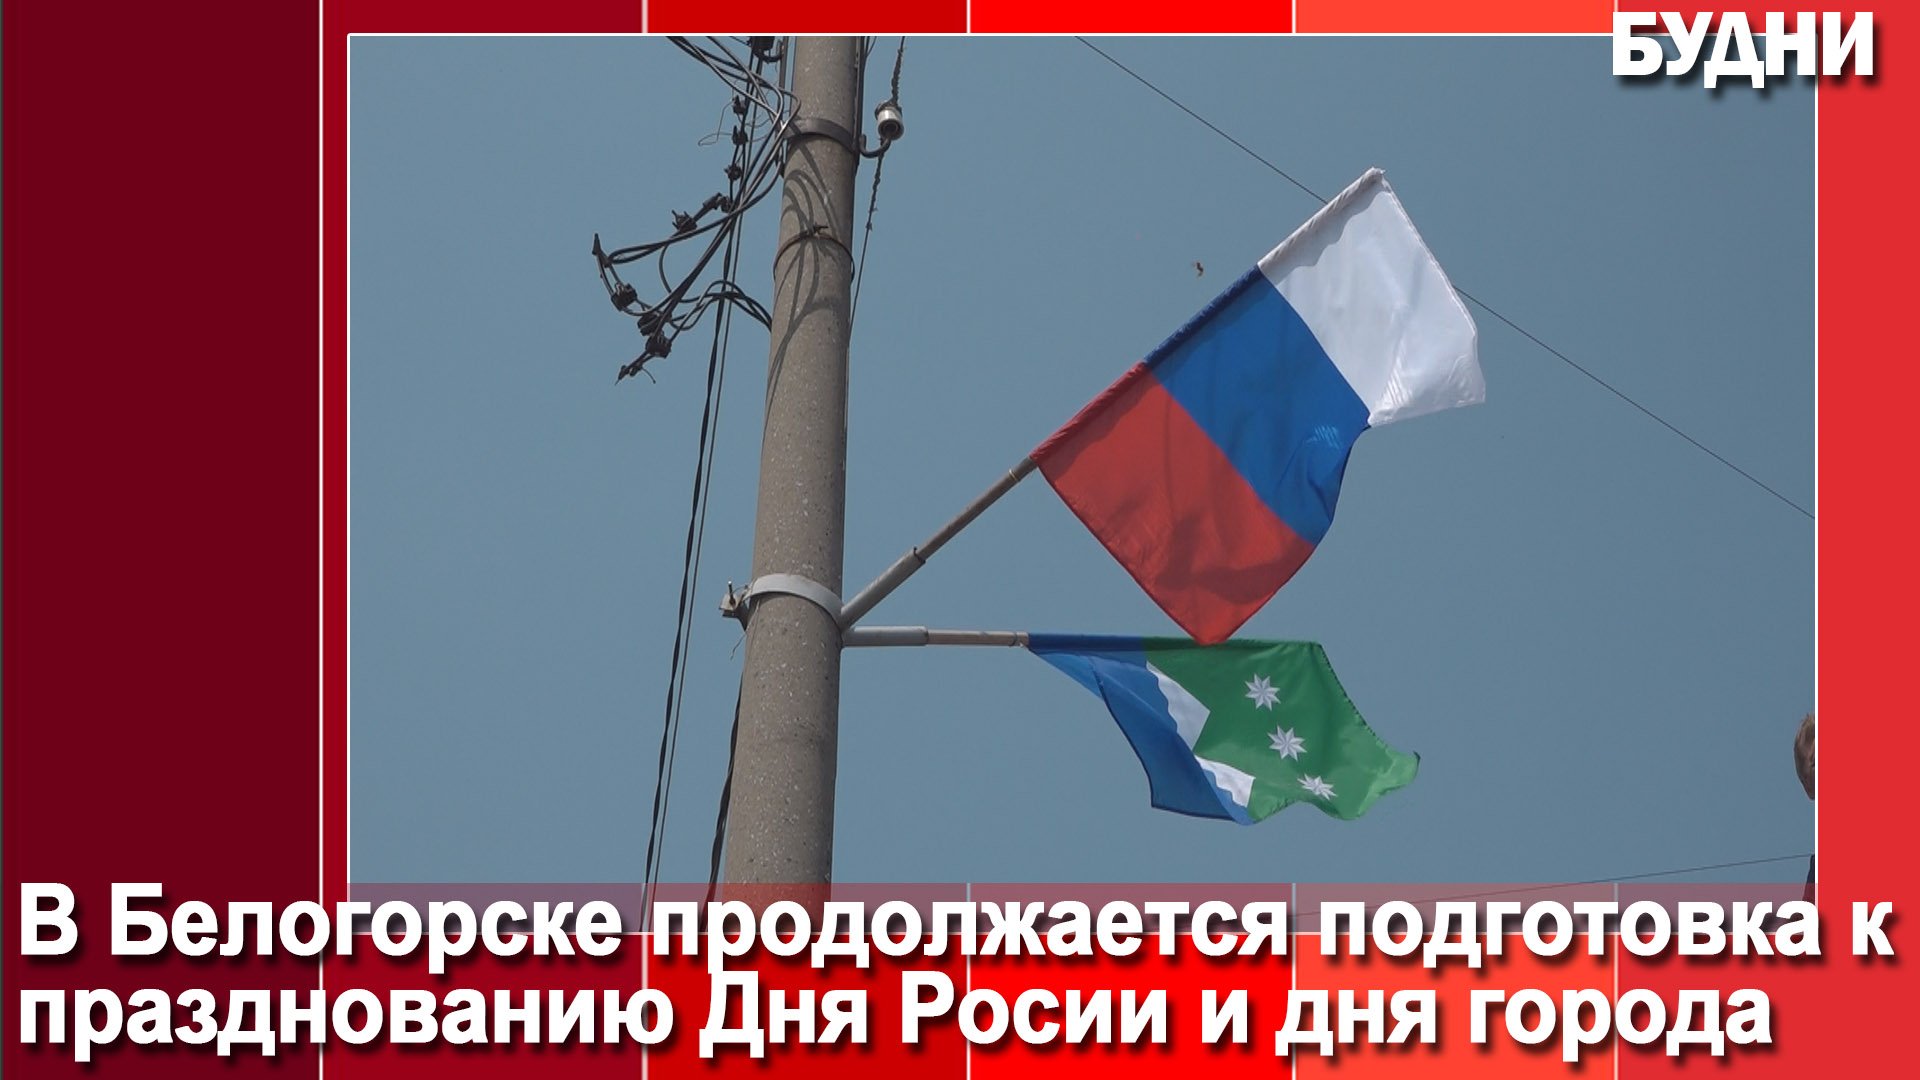 Улицу Кирова украсили флагами России и Белогорска